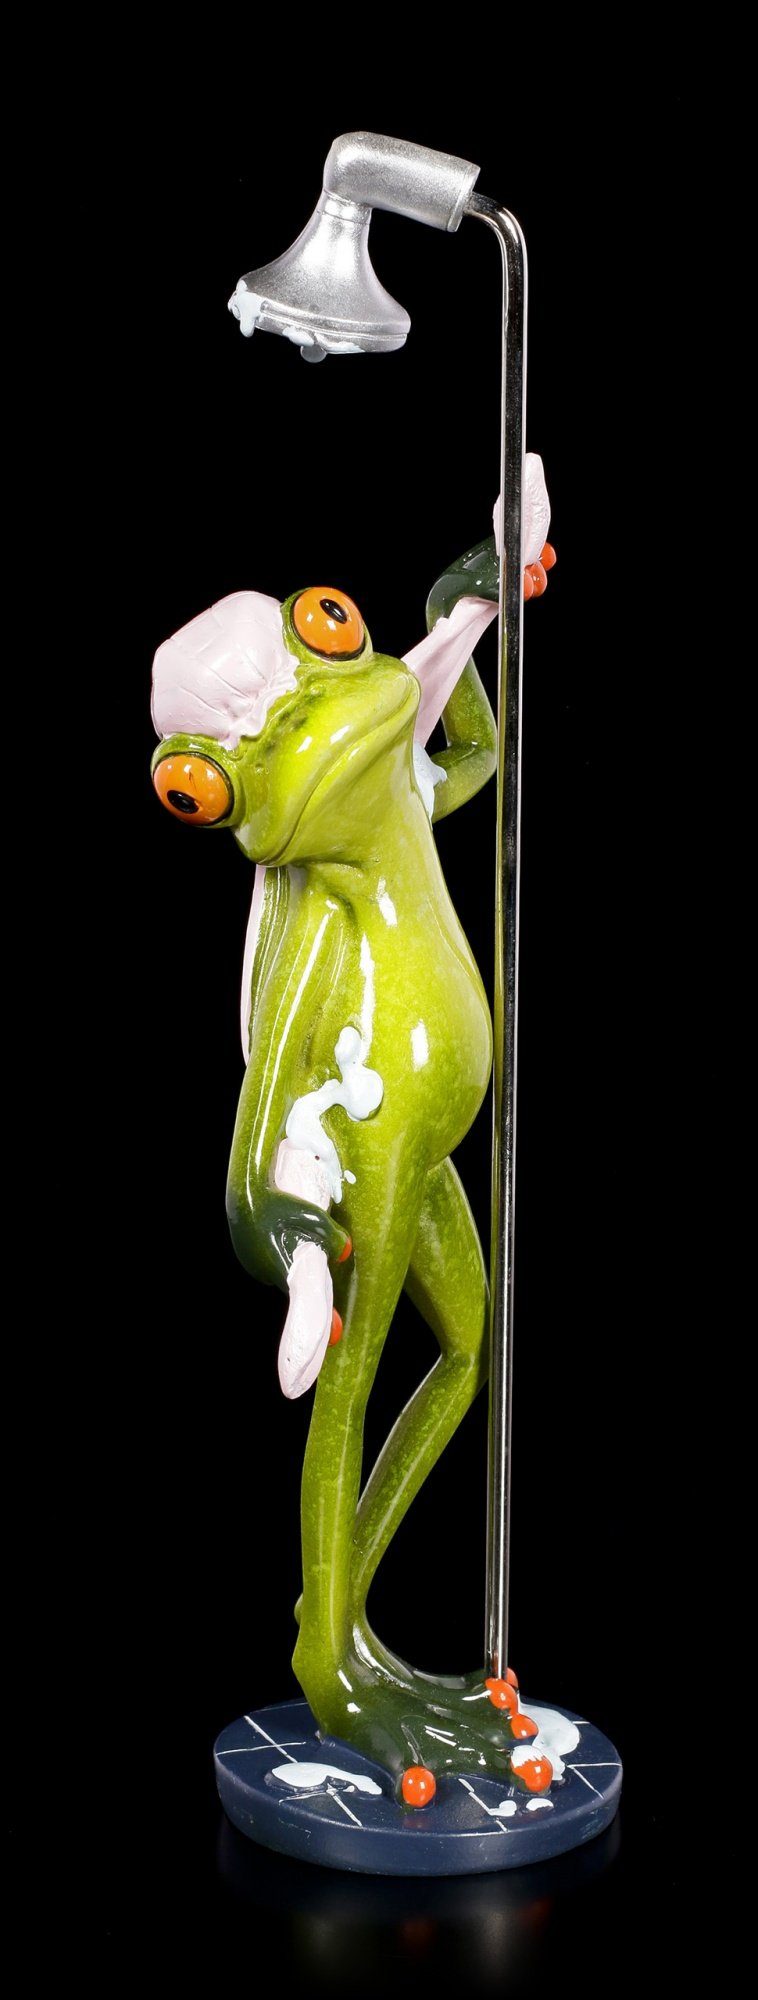 Lustige Deko Keramik Figur " Frosch "  26 cm hoch sitzend 